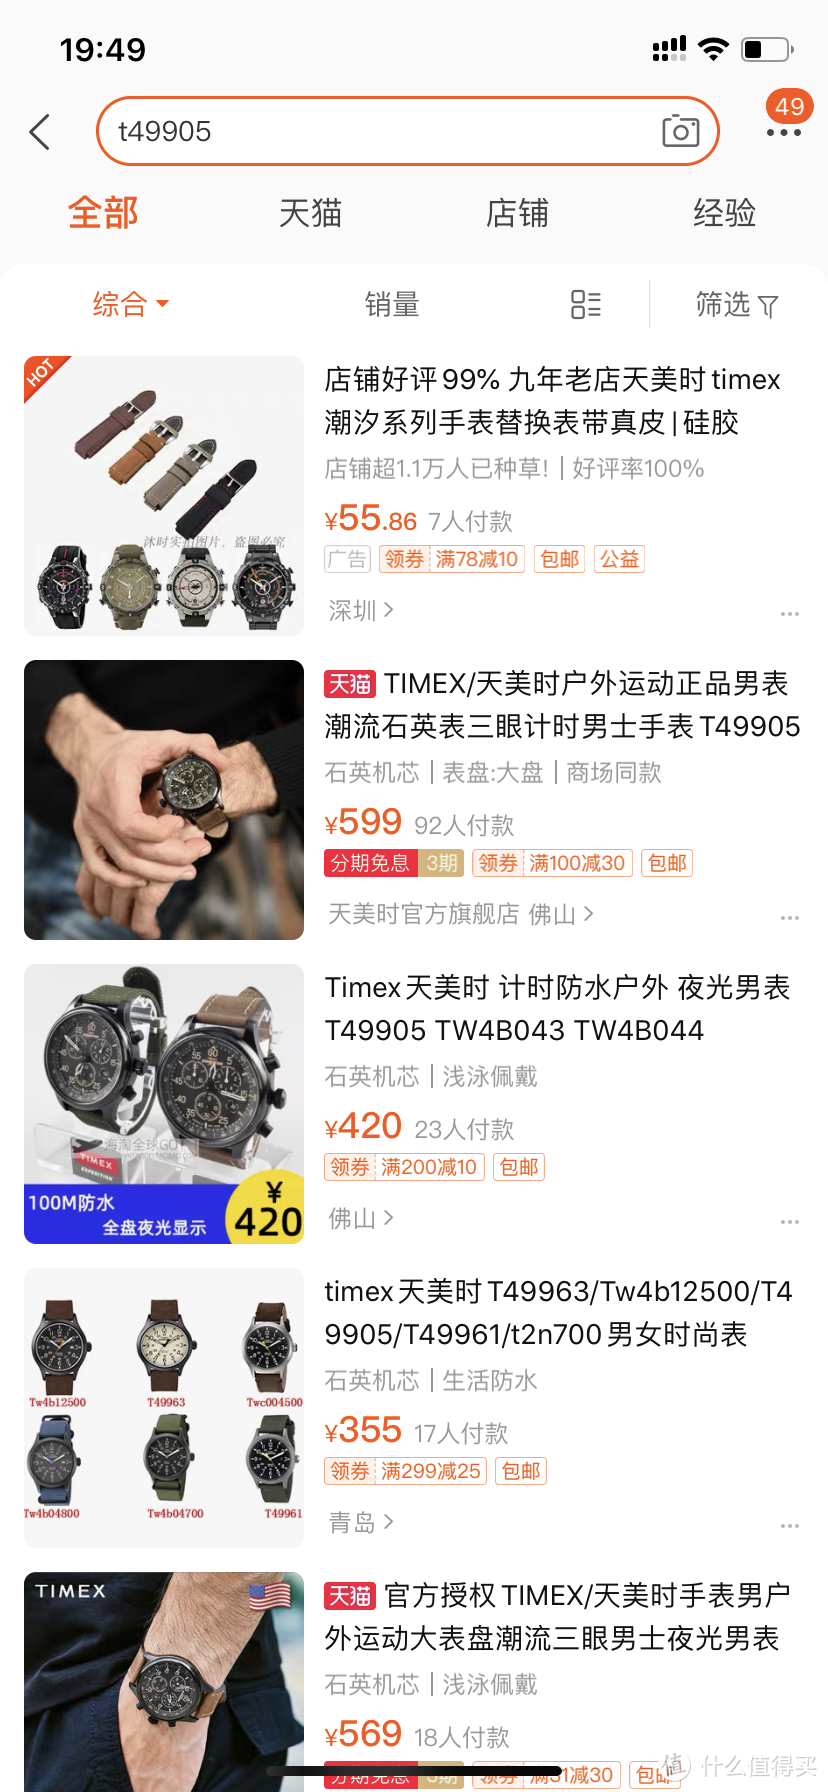 除了Apple Watch，那些好用不贵的腕表品牌都有啥？？